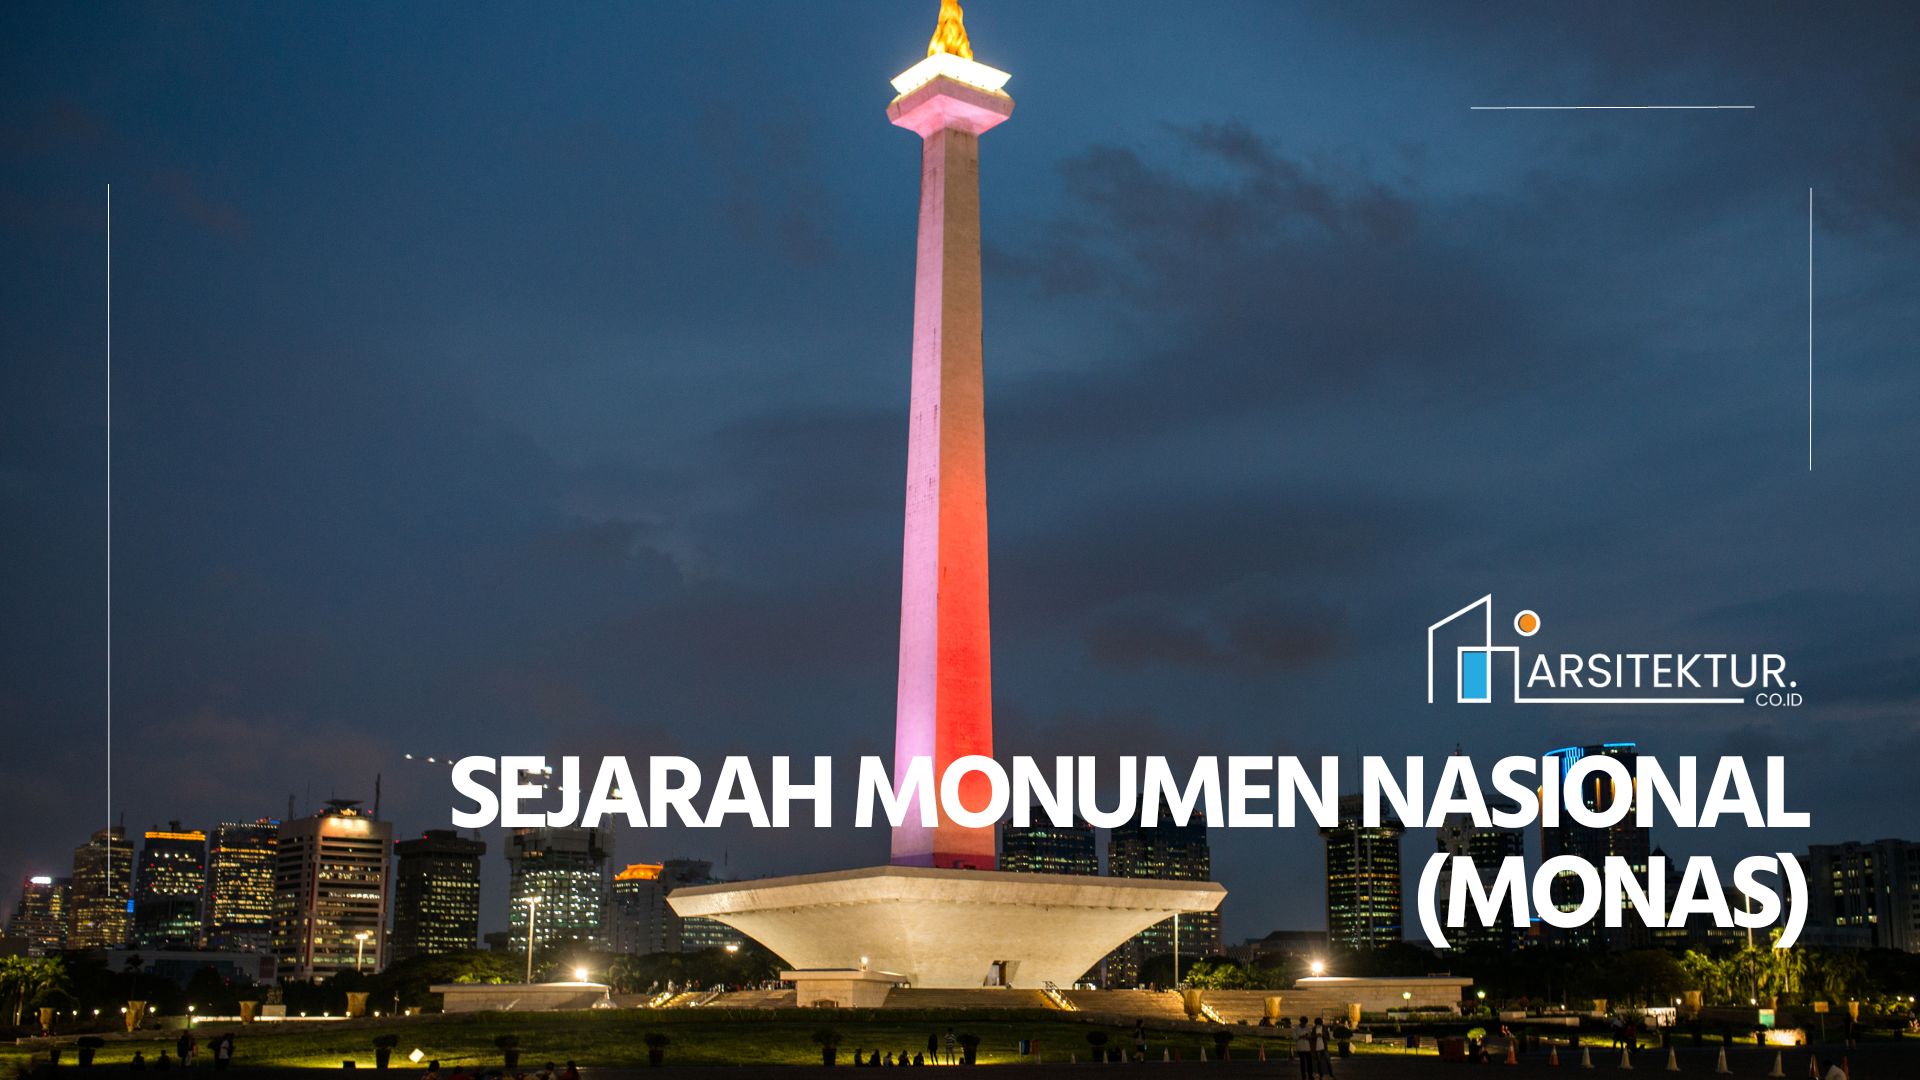 Sejarah Monumen Nasional (Monas)